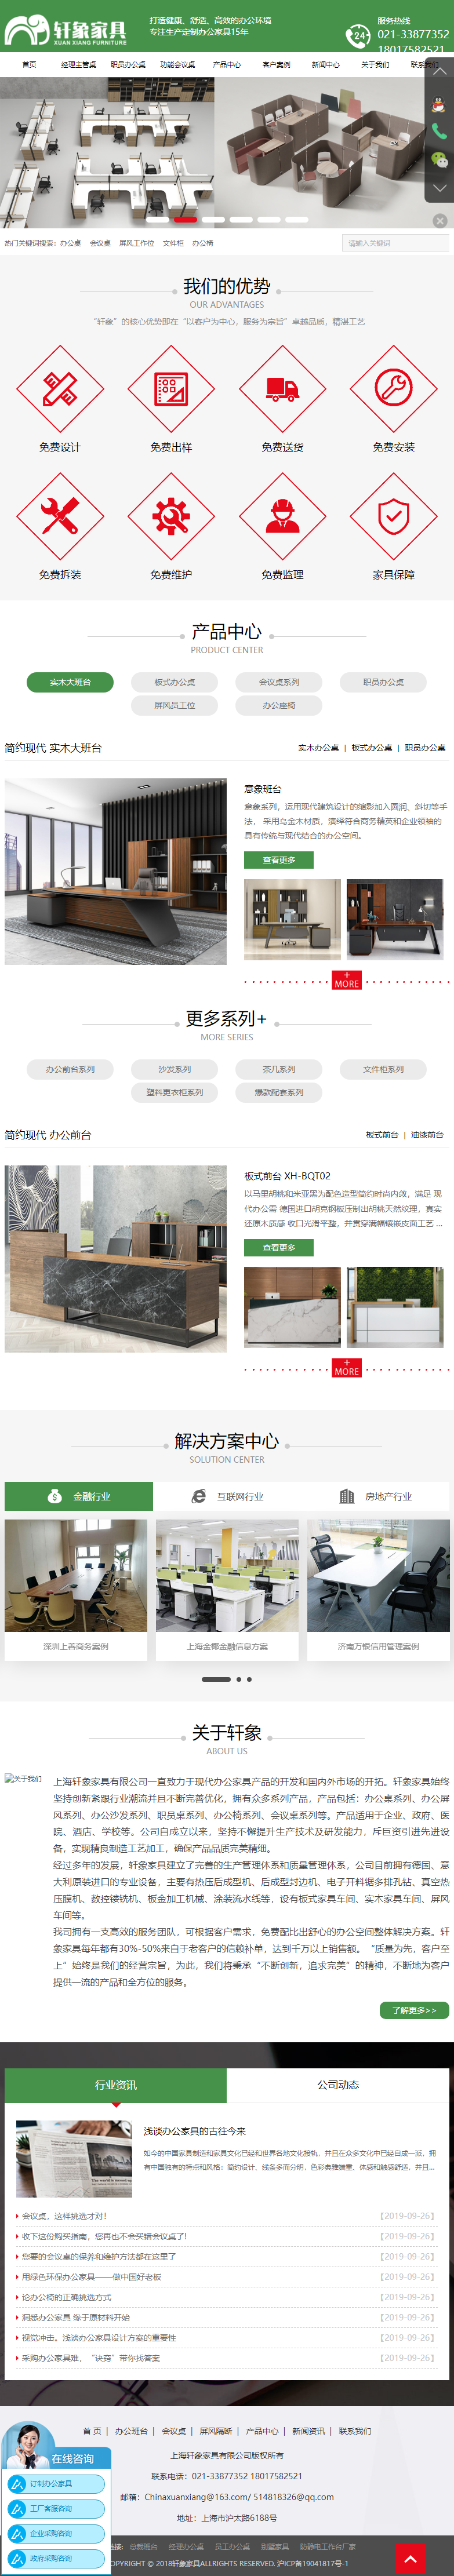 上海轩象家具有限公司网站案例